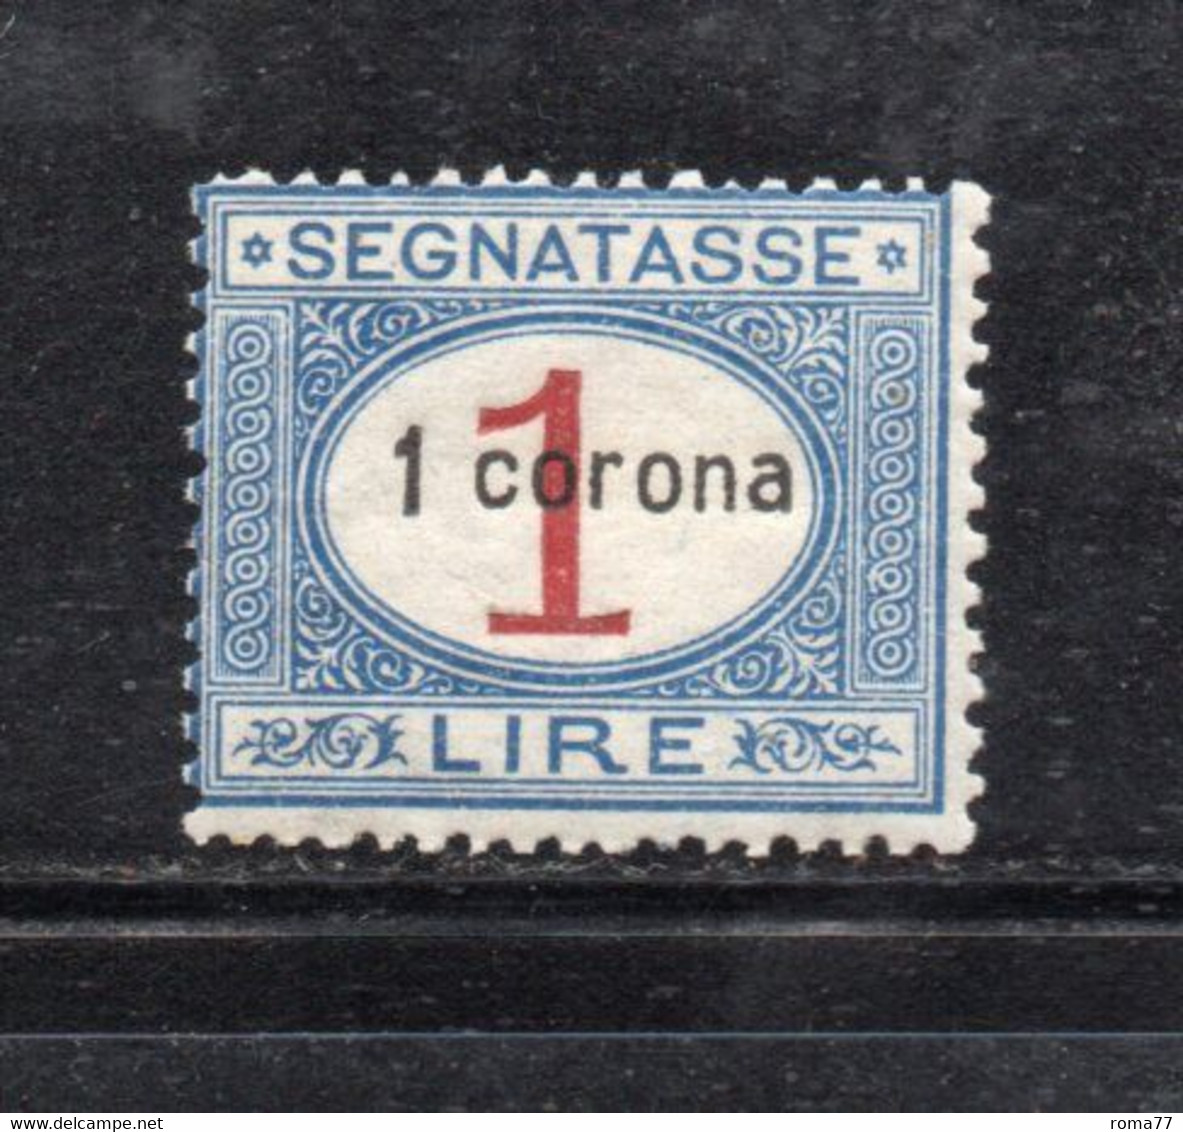 Y2352 - DALMAZIA 1922, Segnatasse Il N. 2  Con Gomma Integra  ***  MNH - Dalmatie